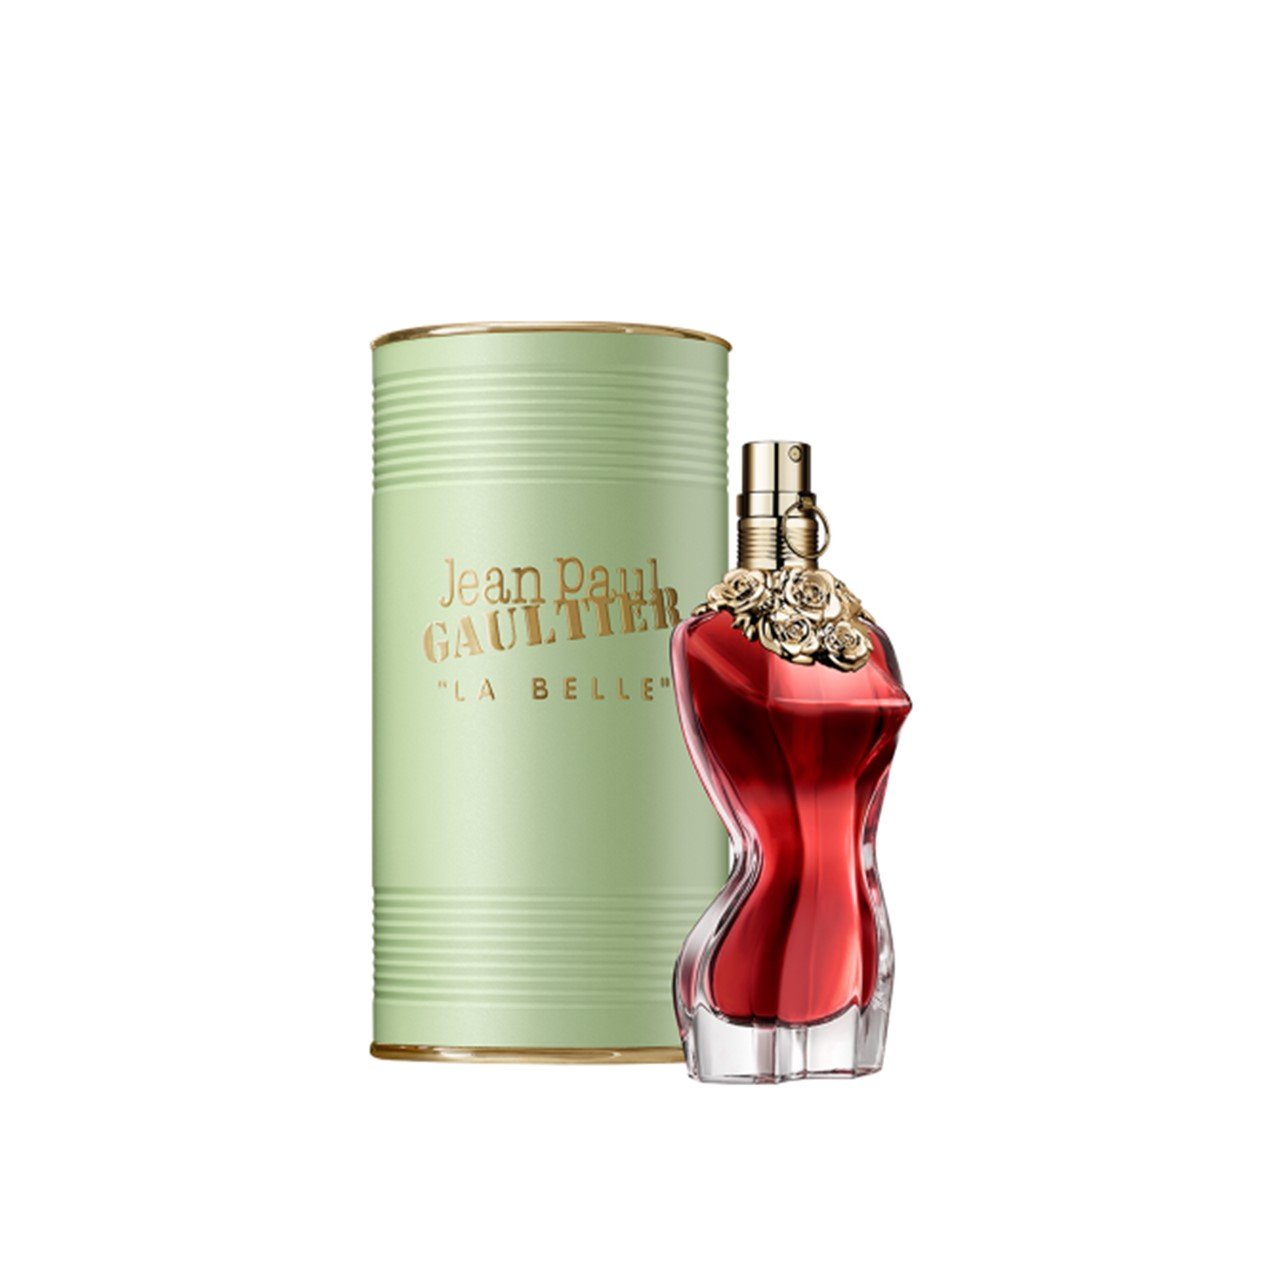 Jean Paul Gaultier La Belle Eau de Parfum 50ml (1.7fl oz)